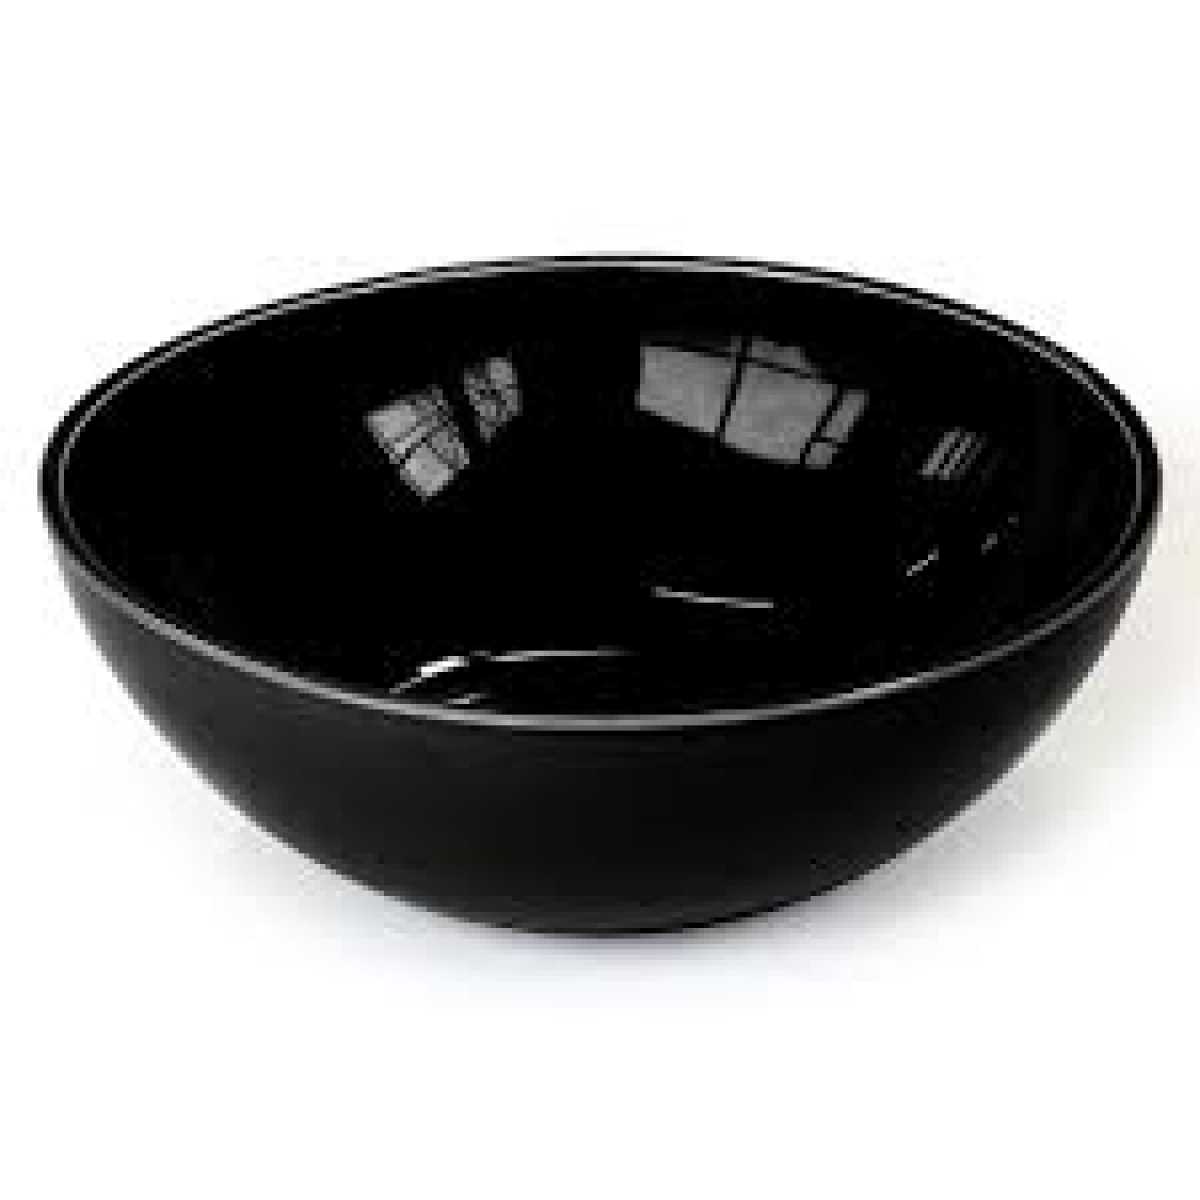 CRASTER Tilt Black Bowl – Medium